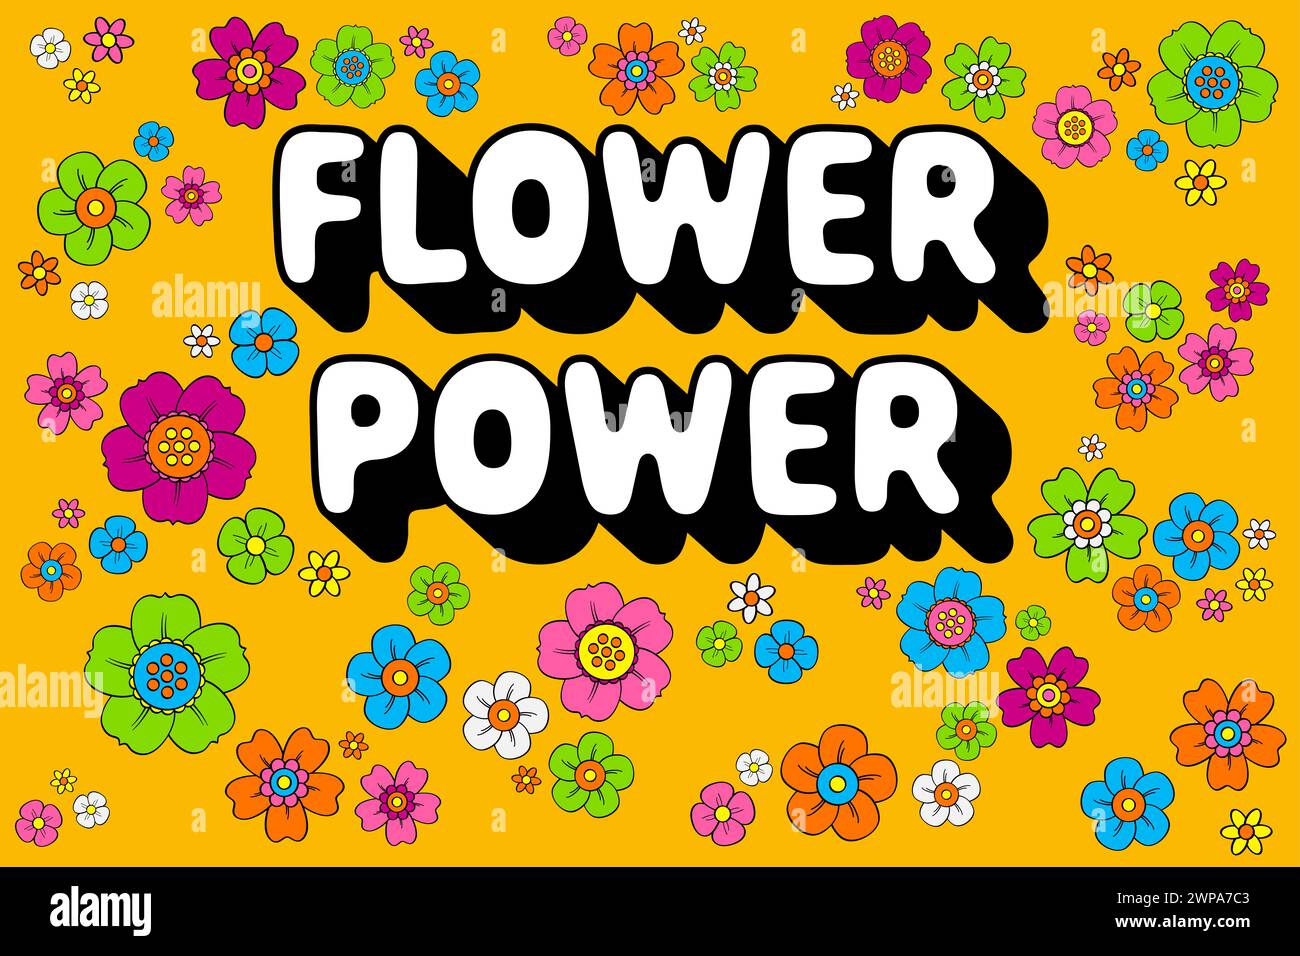 Lettrage de puissance de fleur avec de nombreuses fleurs hippie colorées, sur fond orange. Slogan utilisé dans les années 60 comme symbole de résistance passive. Banque D'Images